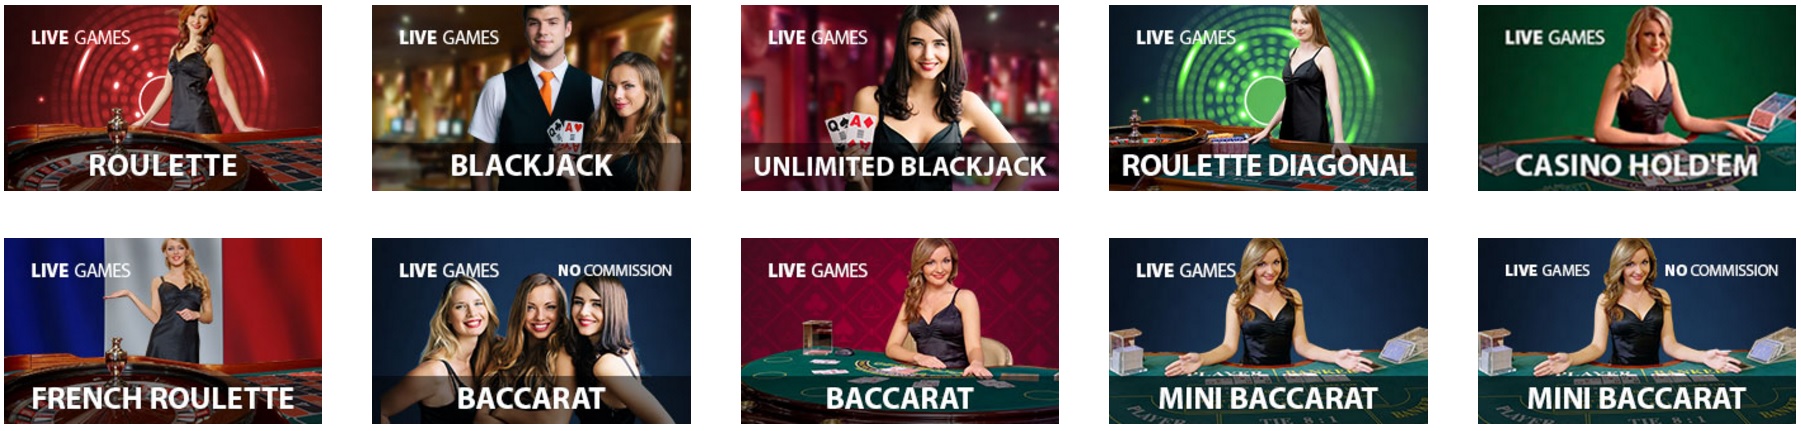 spela live casino på nätet